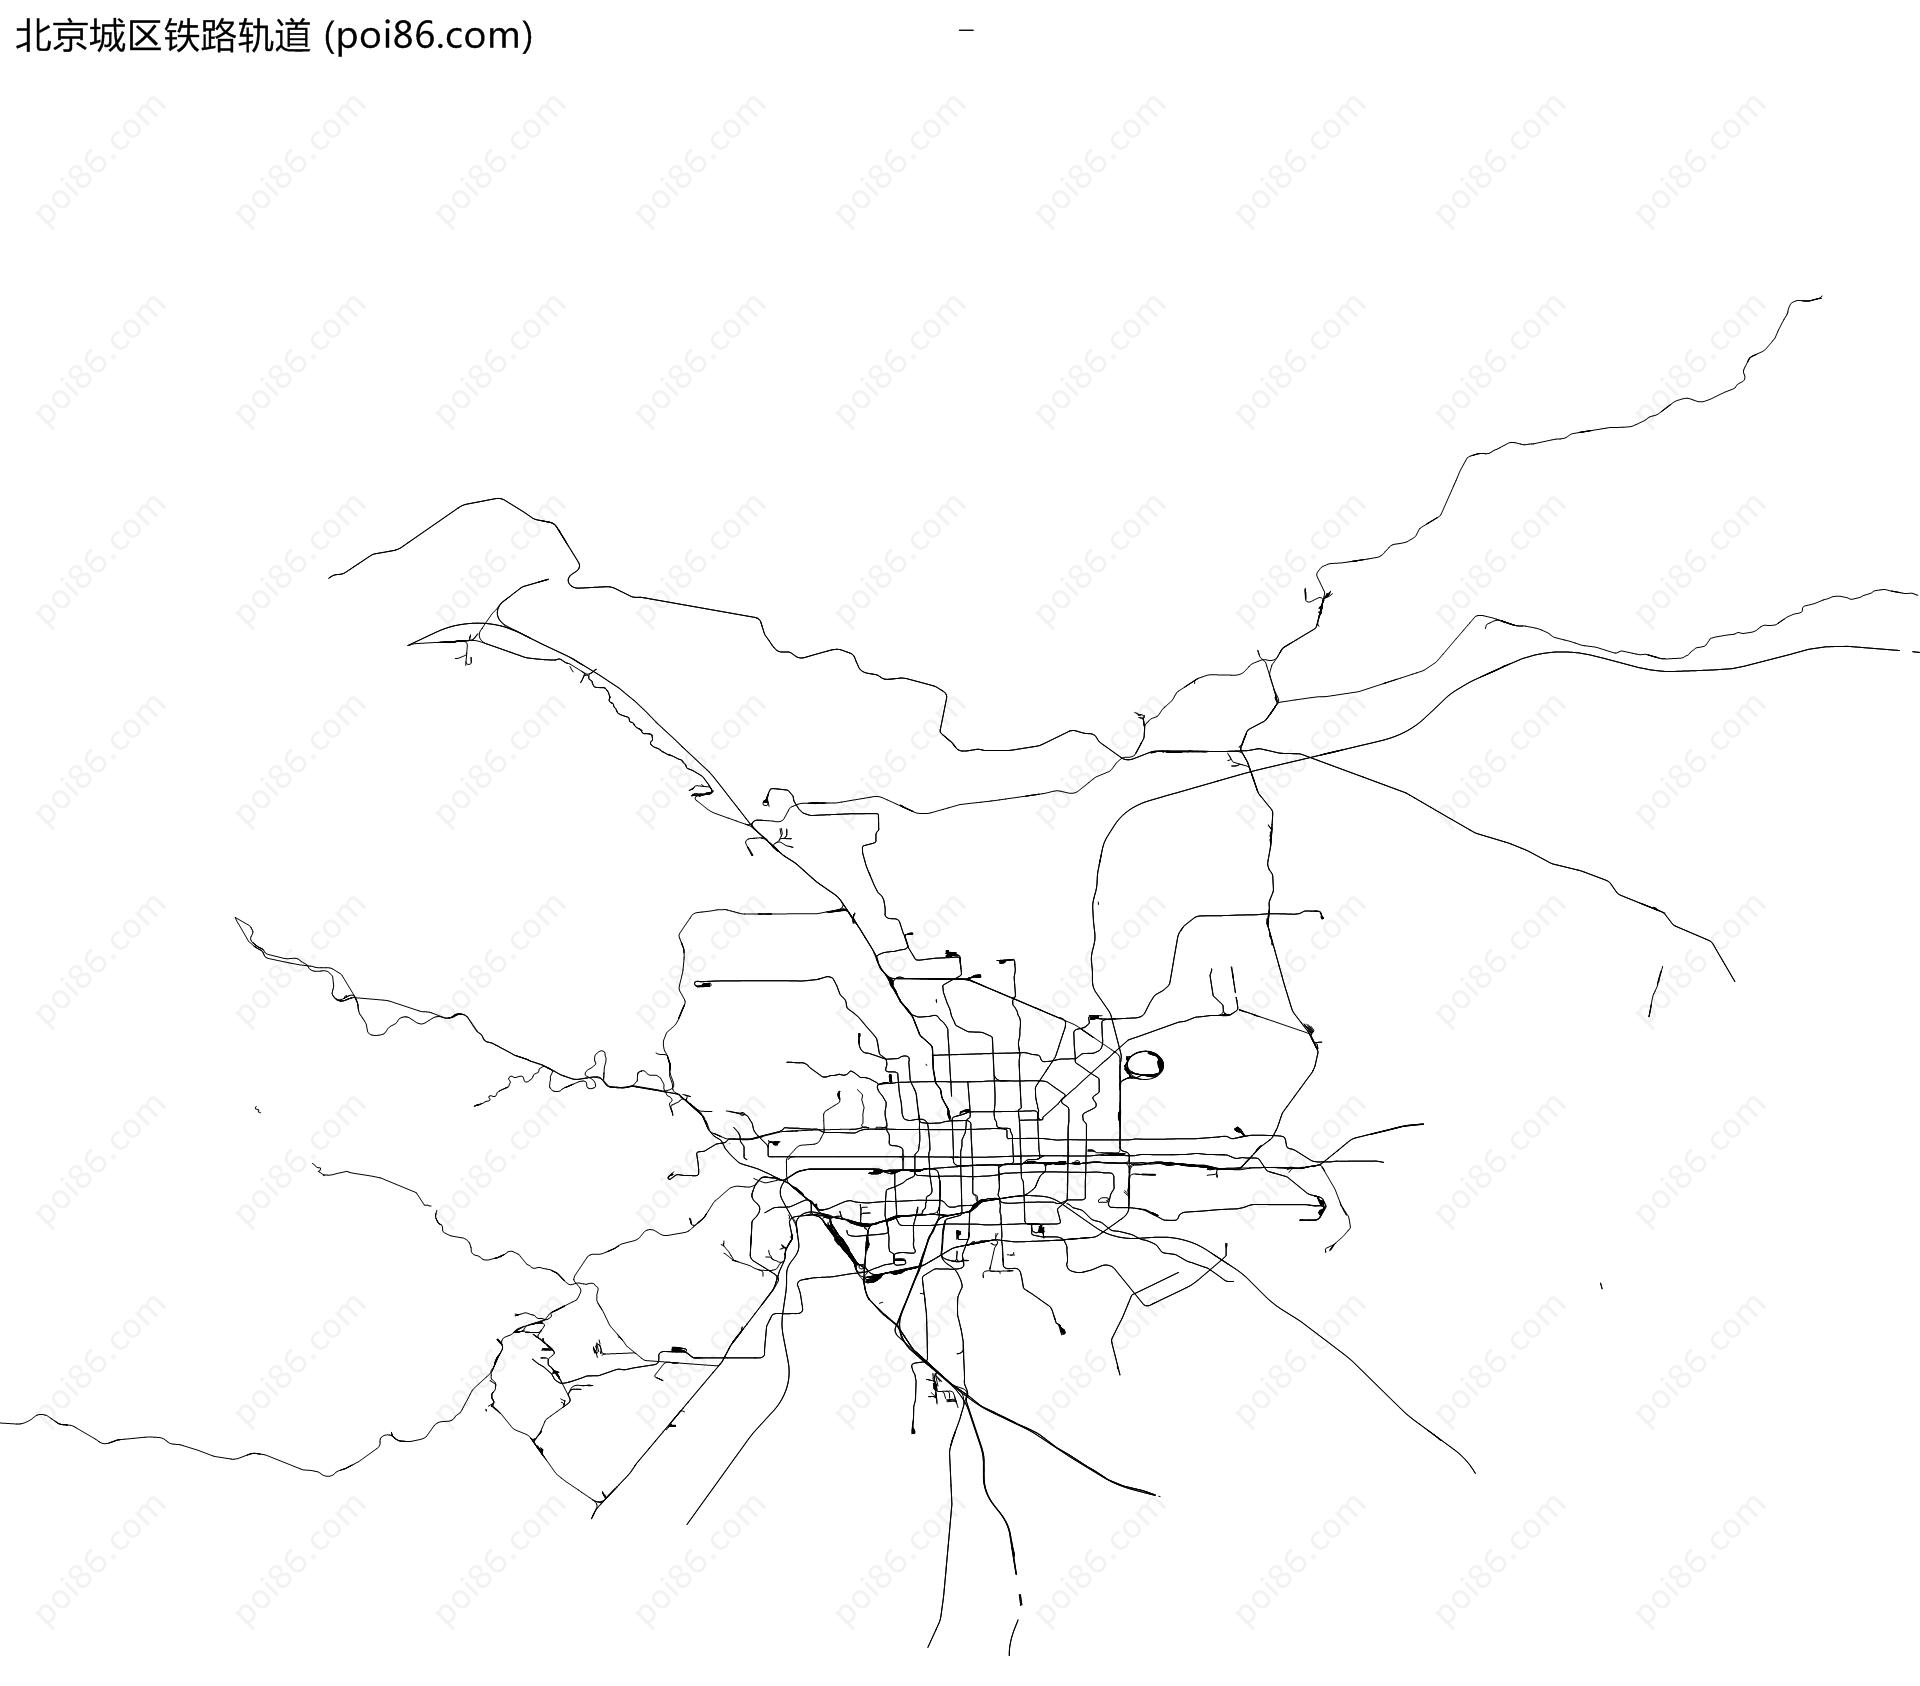 北京城区铁路轨道地图